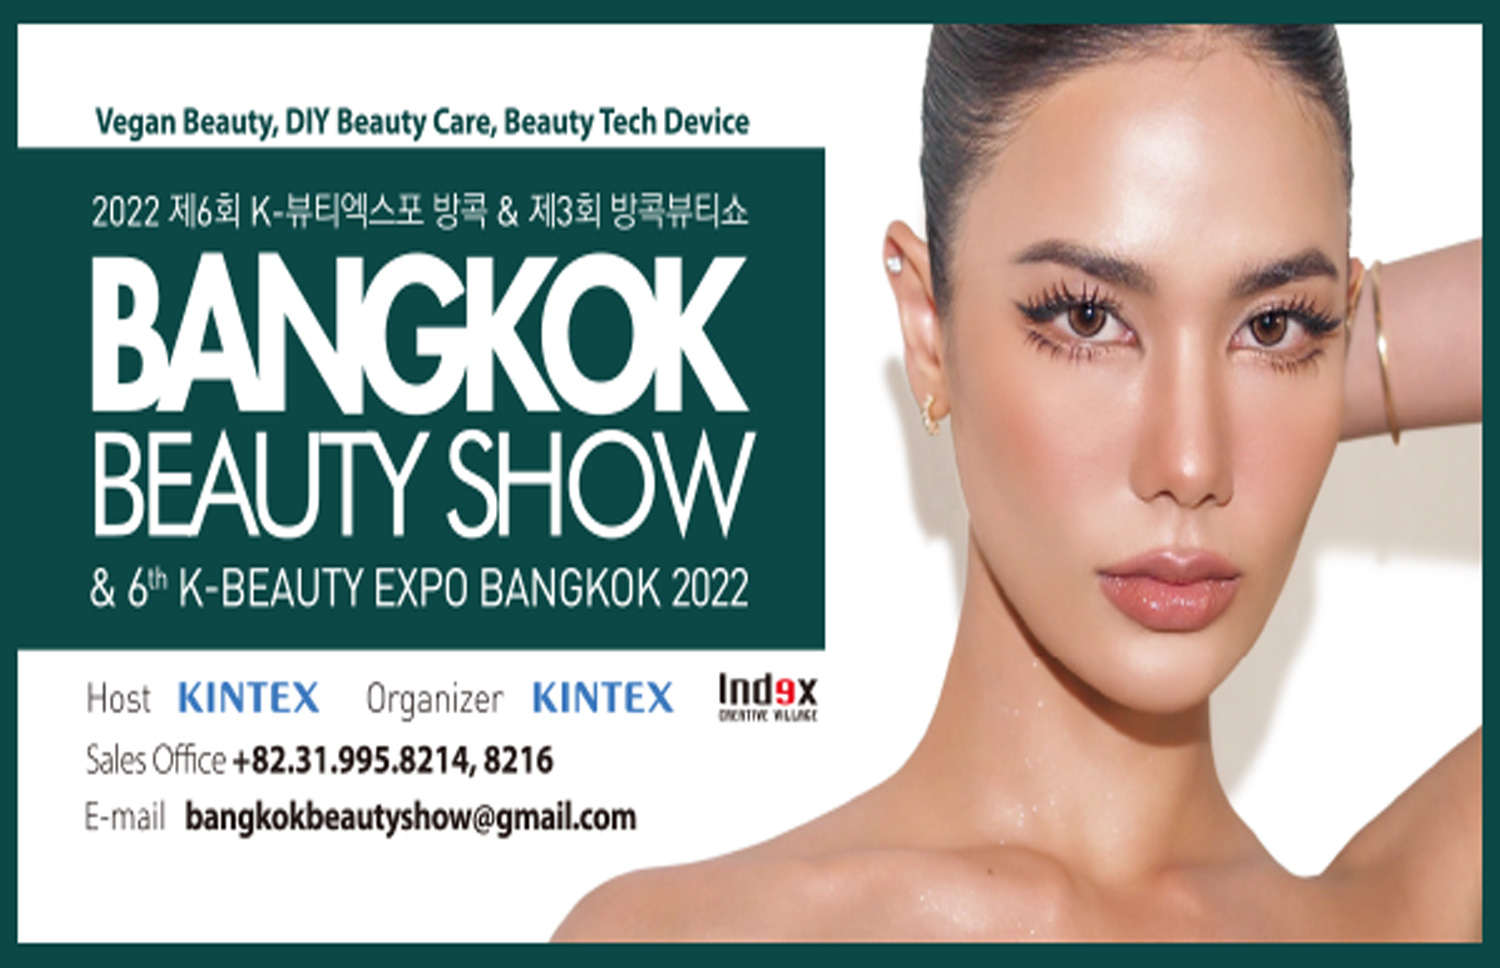 K-BEAUTY EXPO BANGKOK 2022